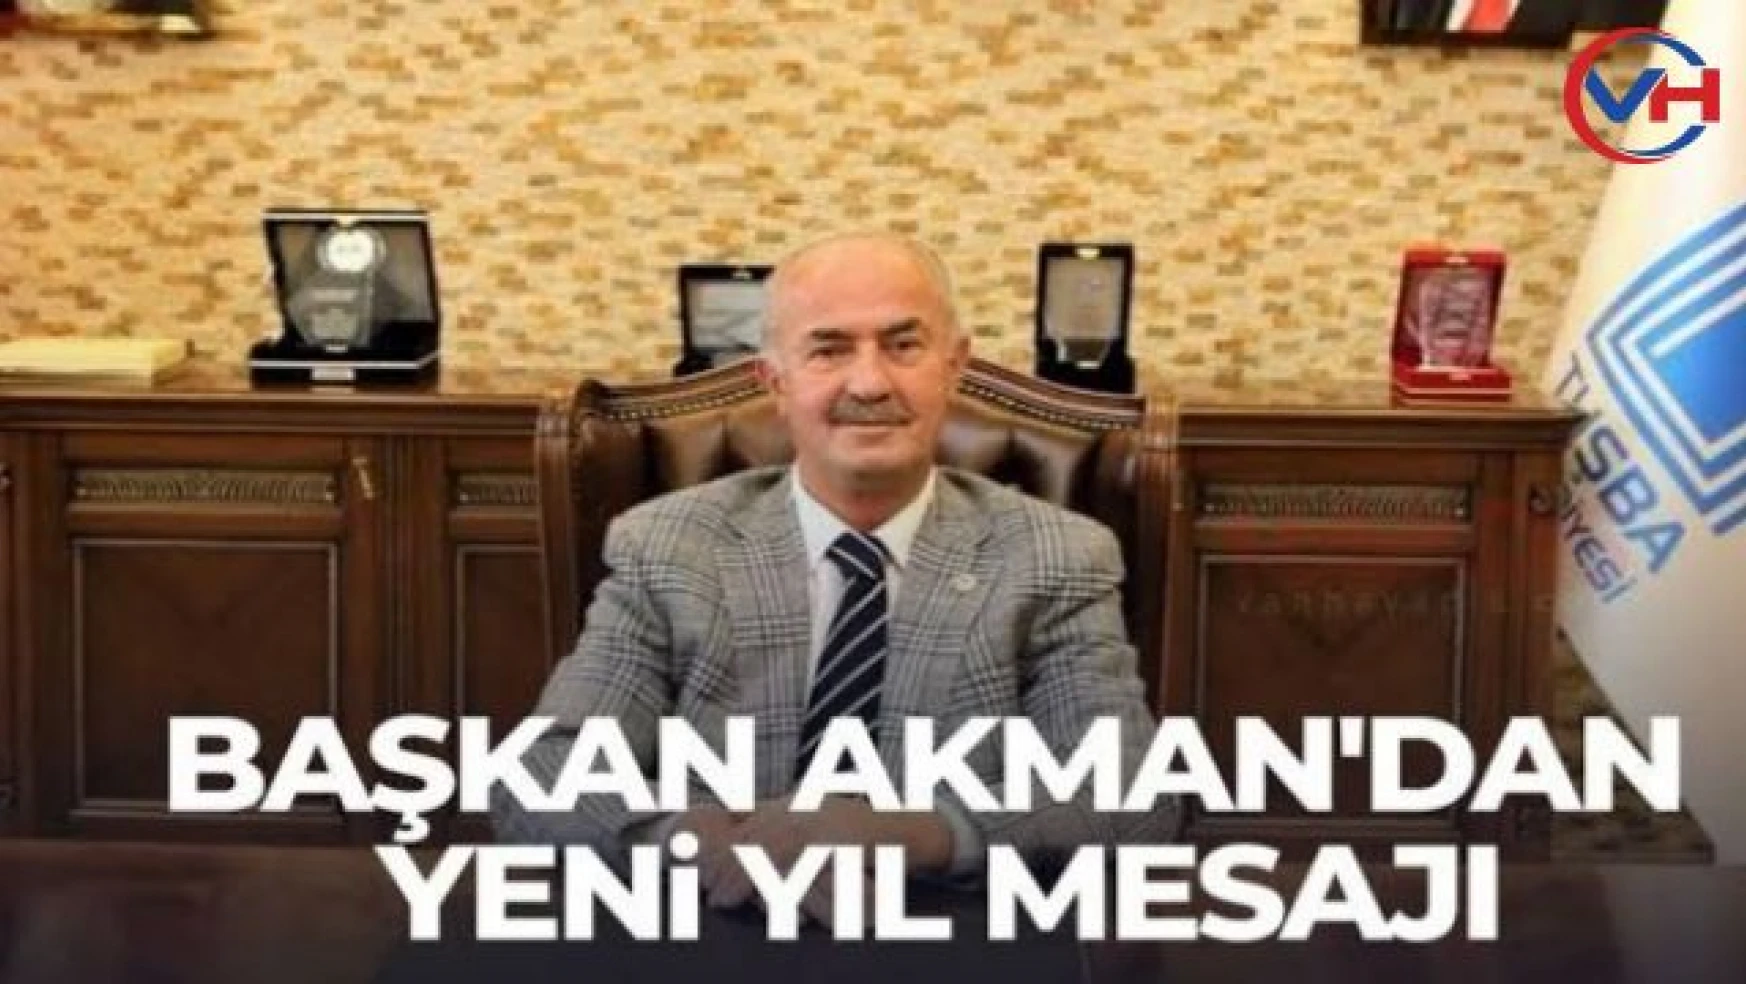 Tuşba Belediye Başkanı Akman'dan yeni yıl mesajı